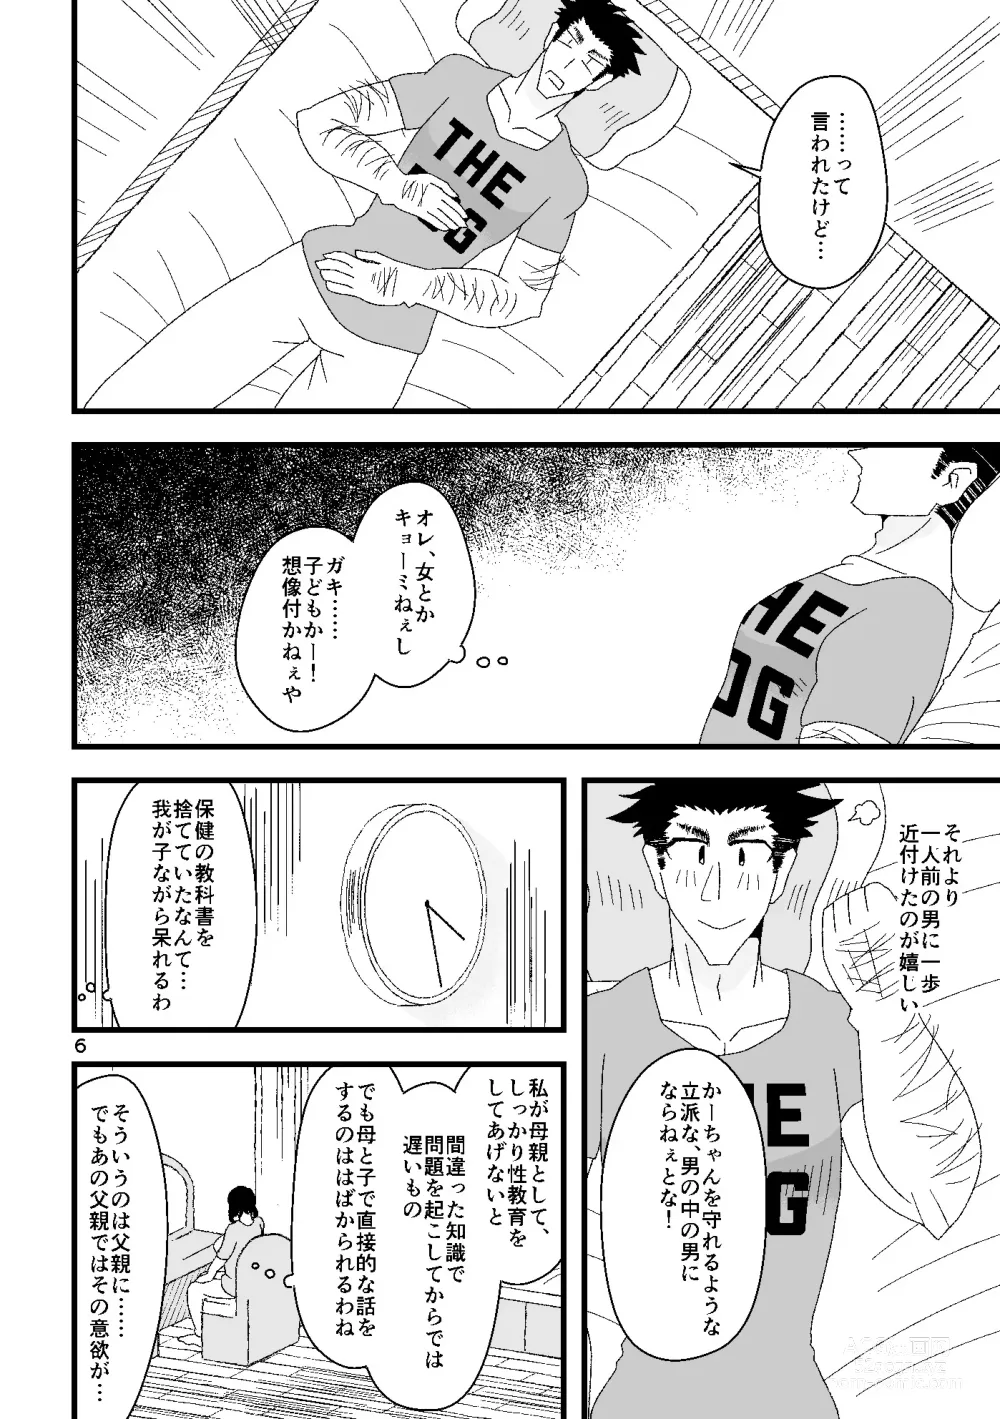 Page 7 of doujinshi Ichiban Shibori ni Nureru Hate